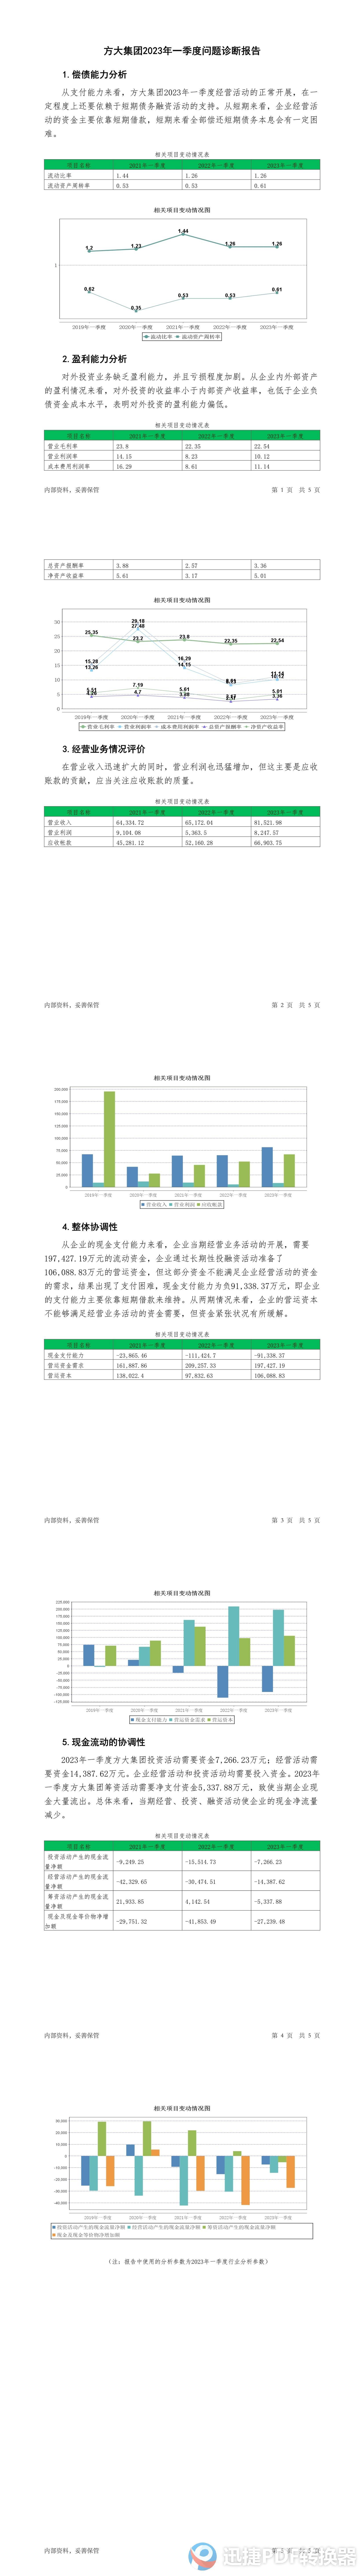 安博体育官方智泽汉文库2023年一季度题目诊疗报告——方大团体(图1)